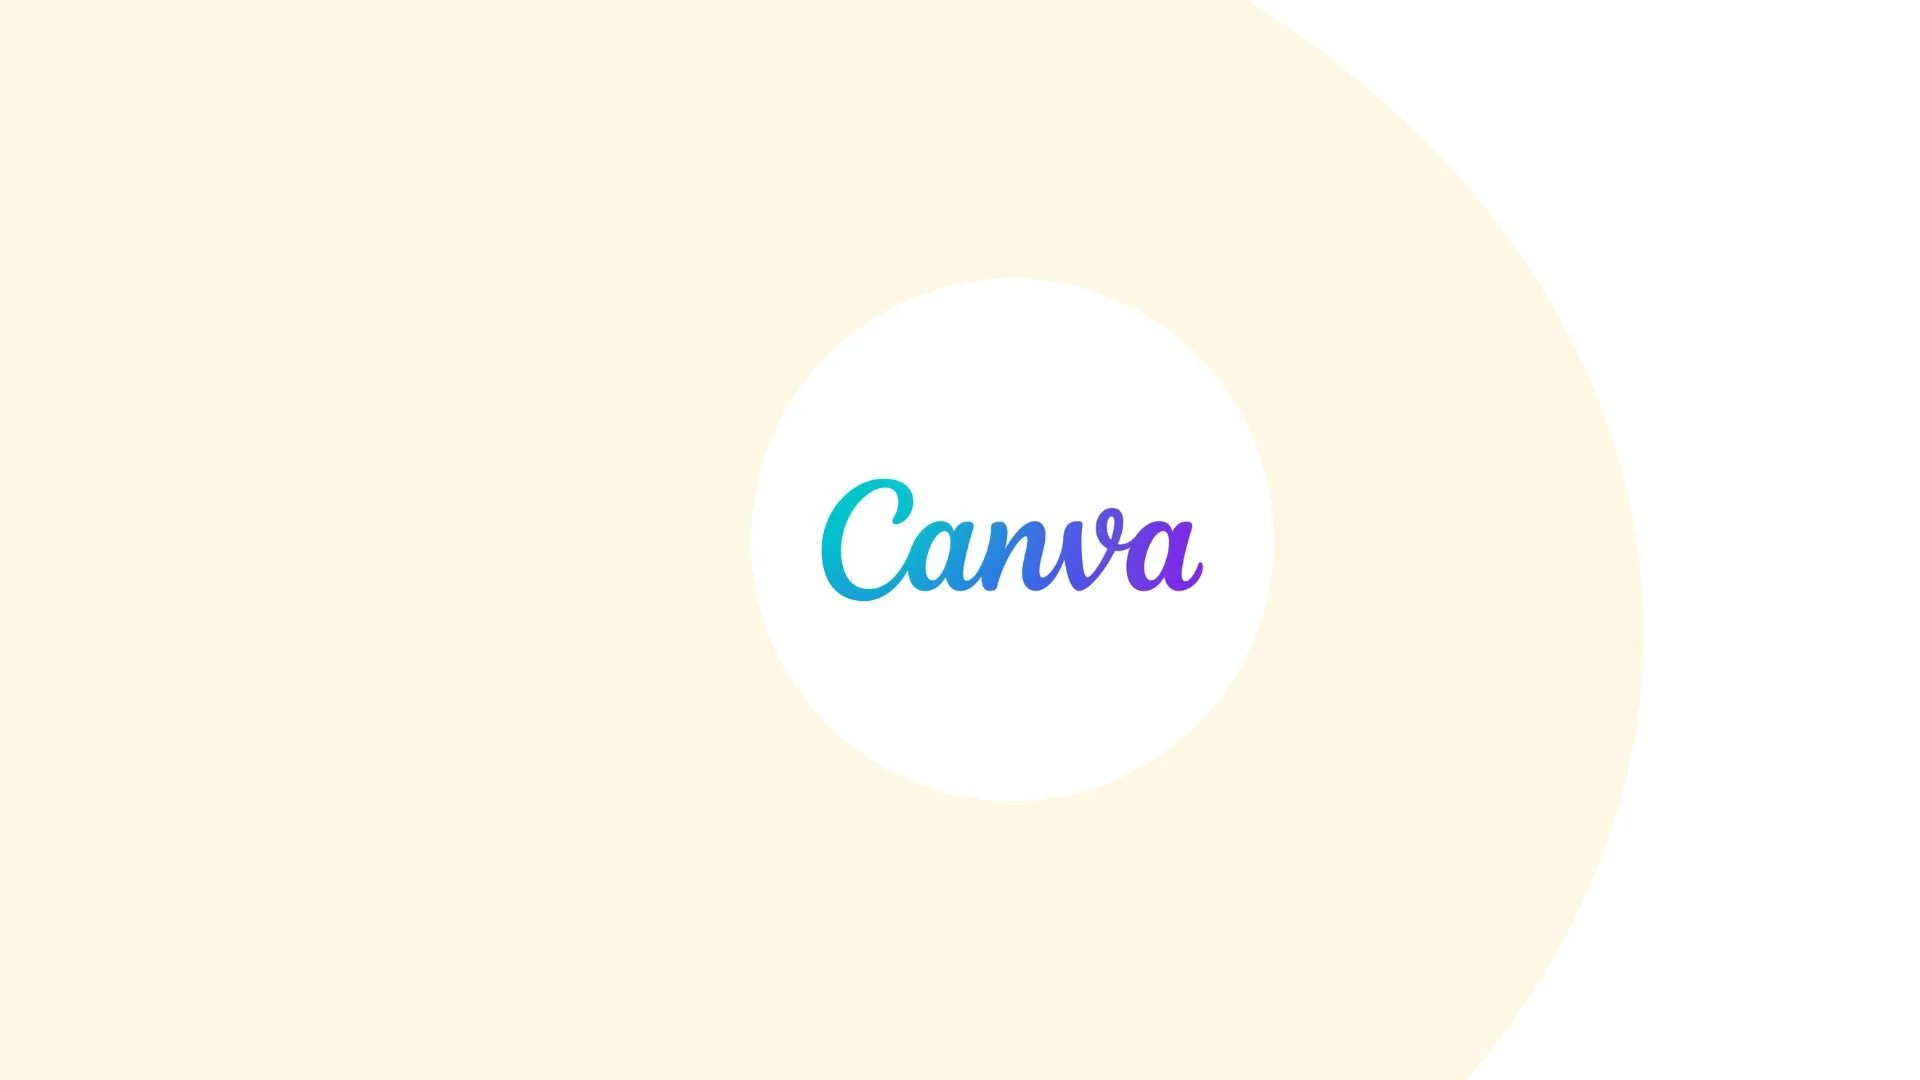 آموزش طراحی پوستر برای تبلیغات اینستاگرام در Canva